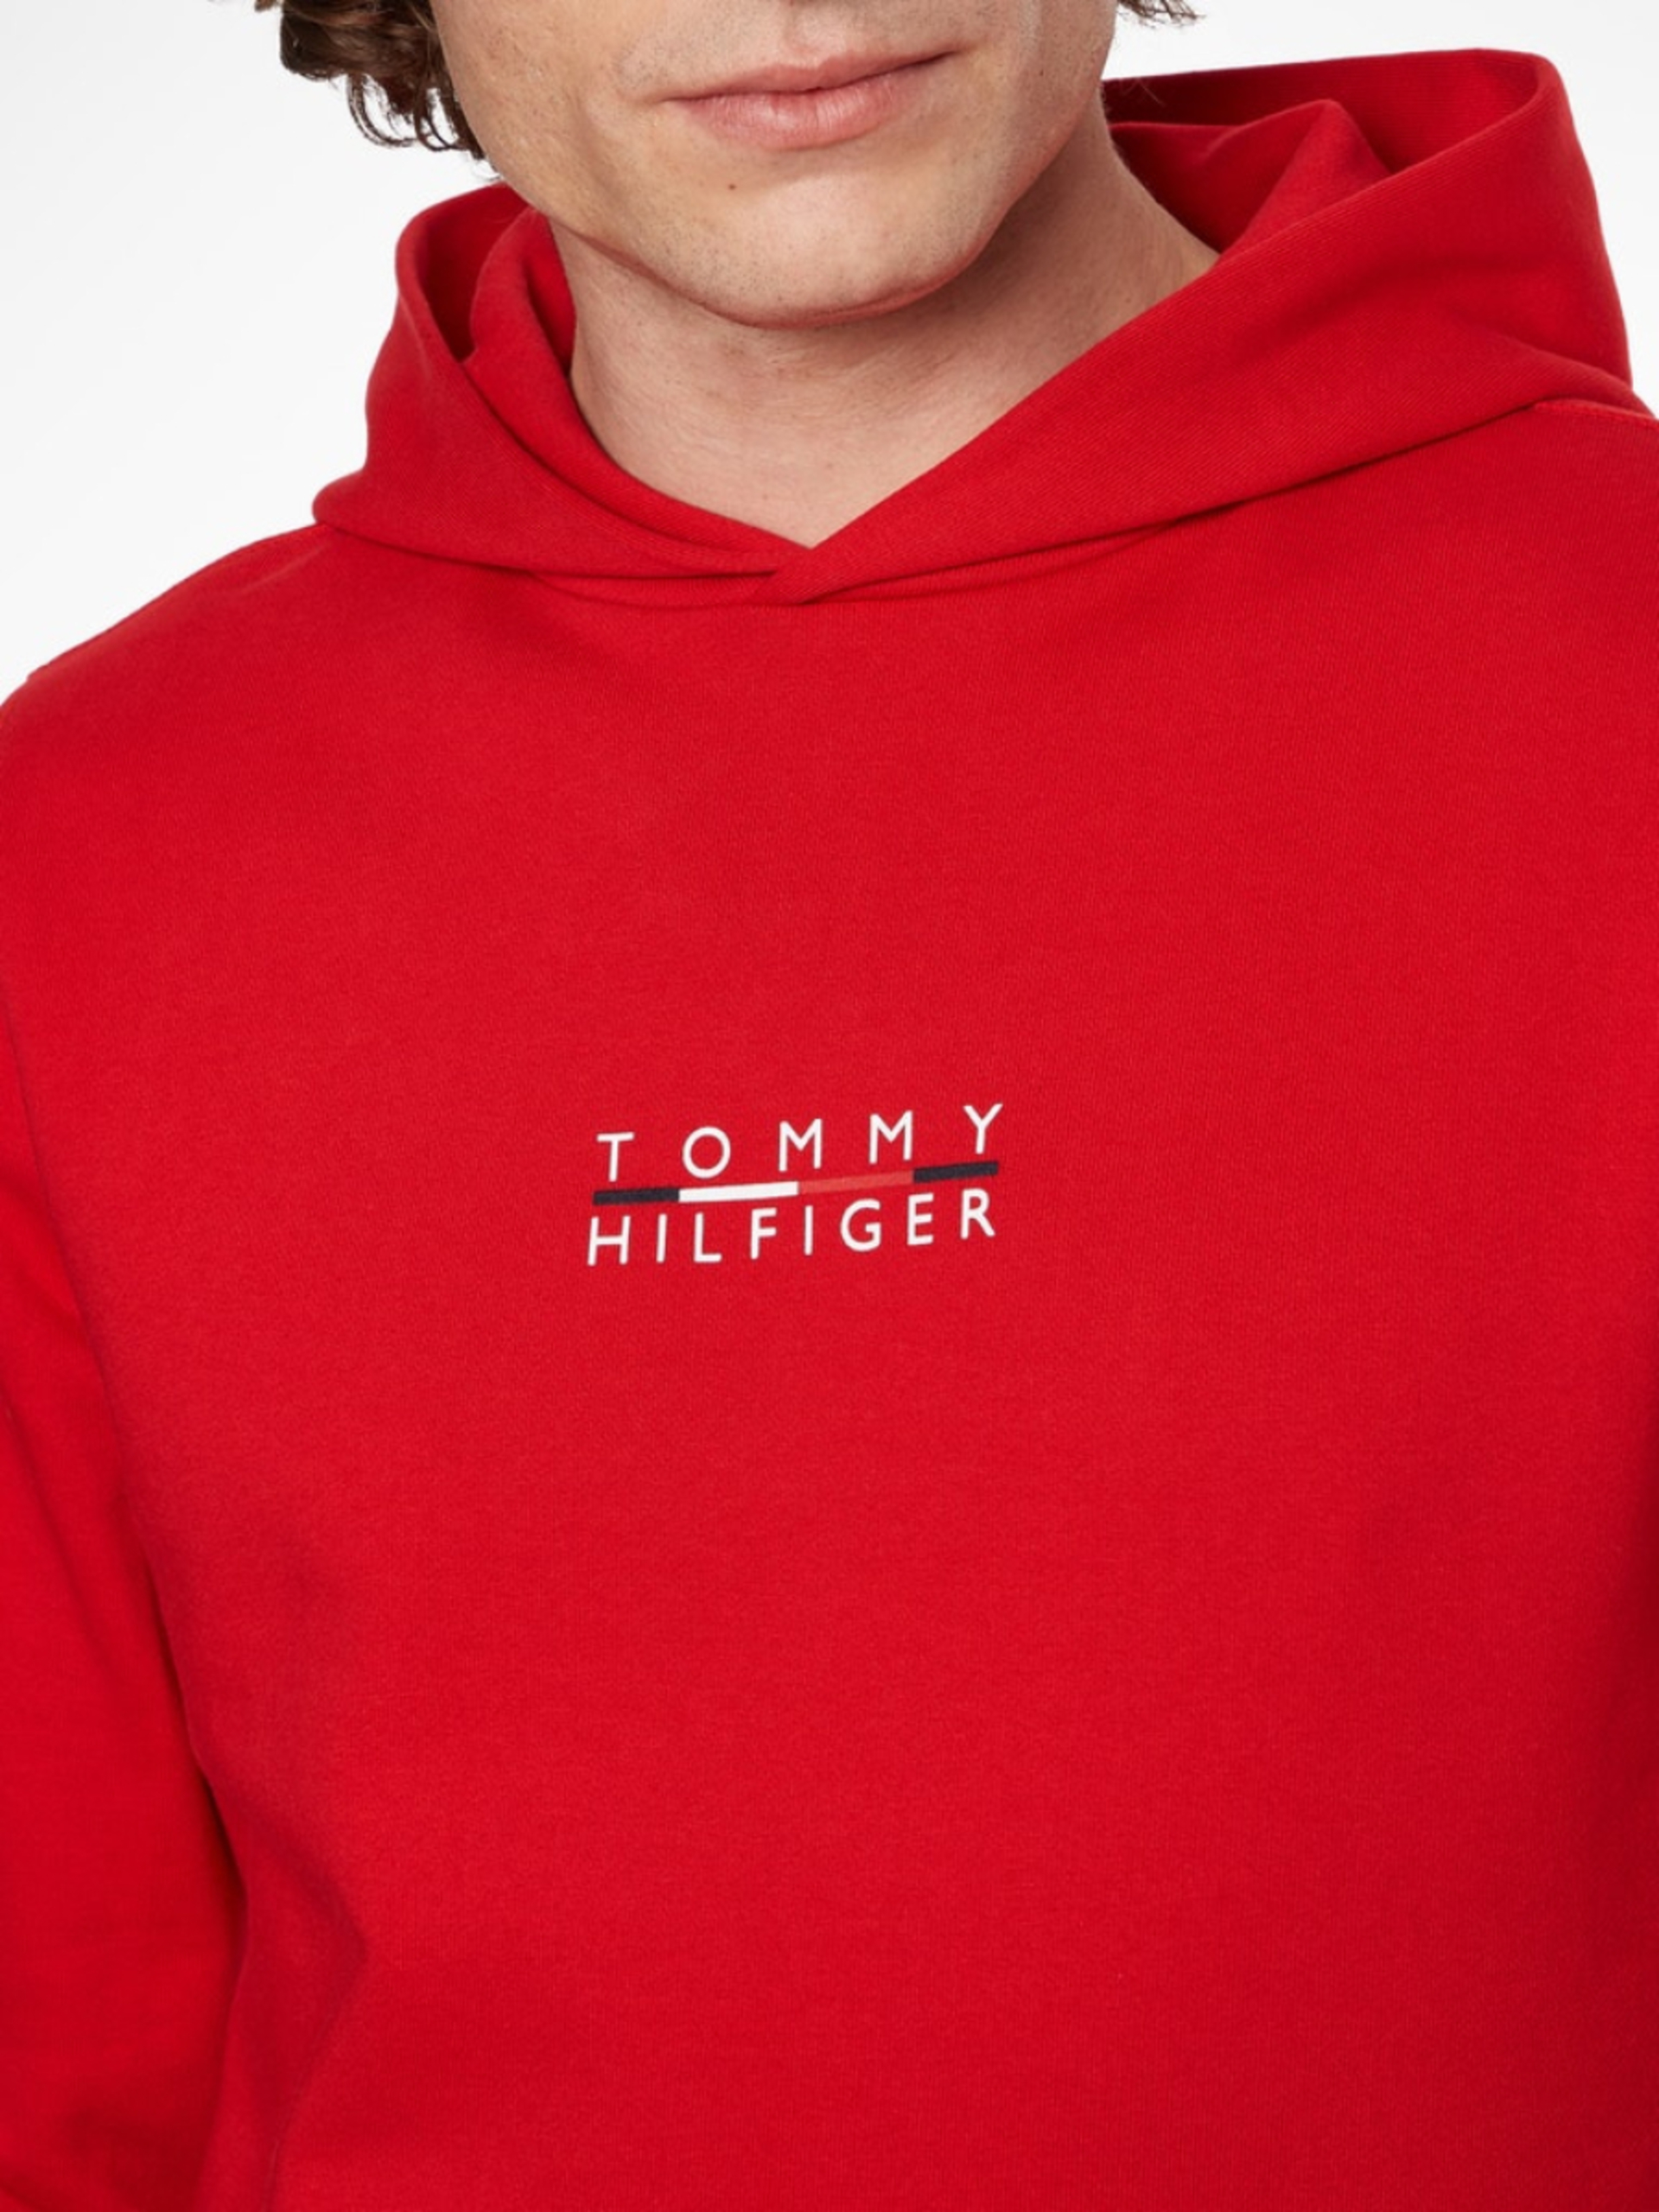 Tommy Hilfiger pánská červená mikina Square logo - S (XLG)